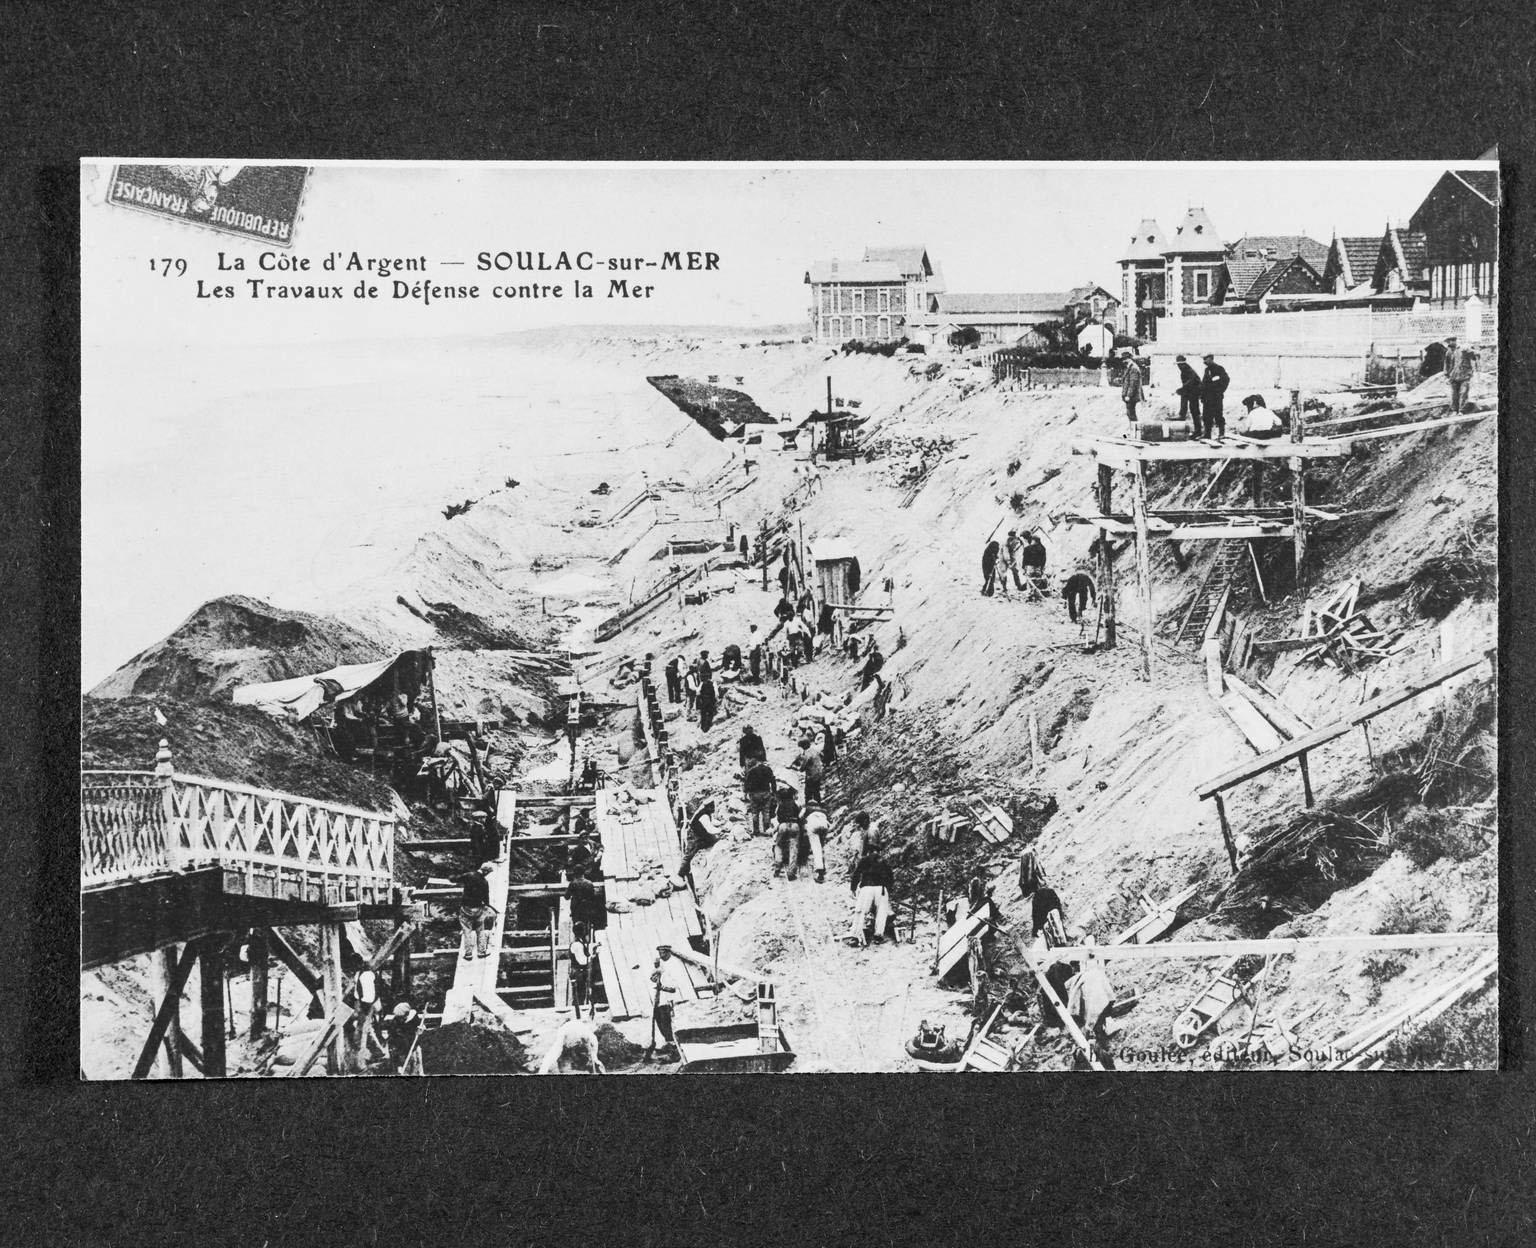 Carte postale, début 20e siècle (collection particulière) : Travaux de défense du front de mer.